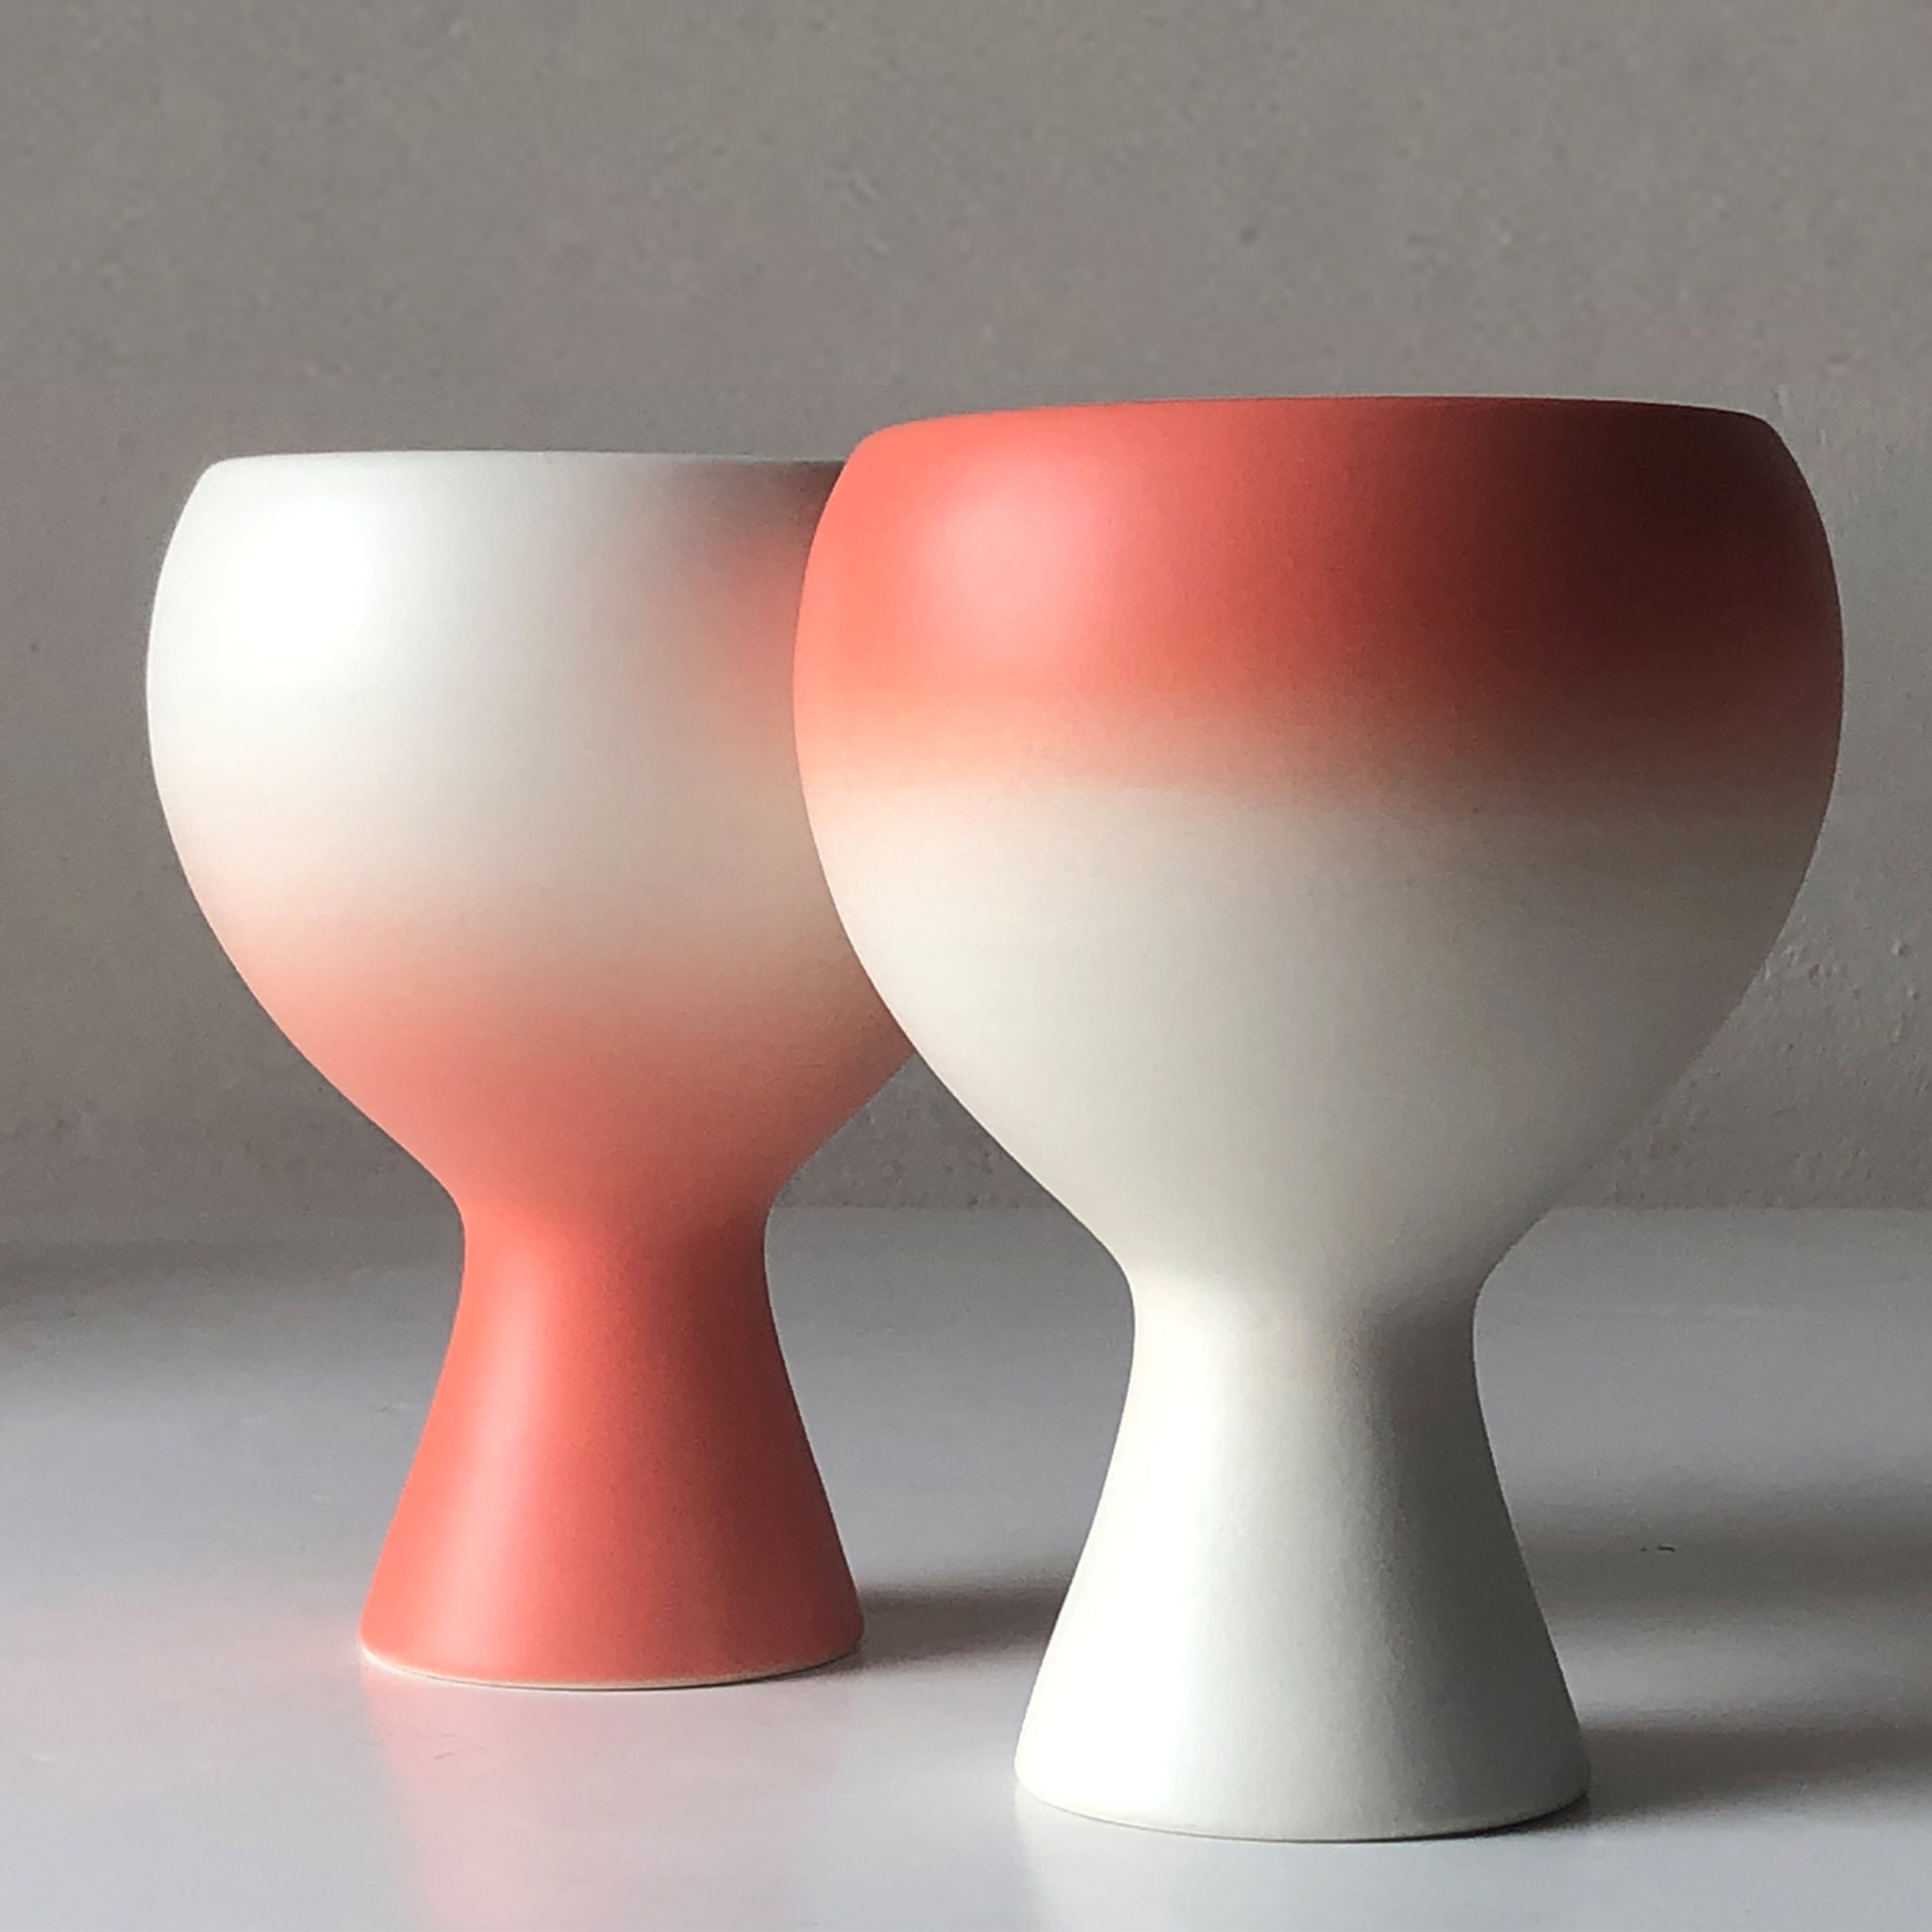 Inseparabili Peach Pink Set of 2 Cups - Alternative view 1